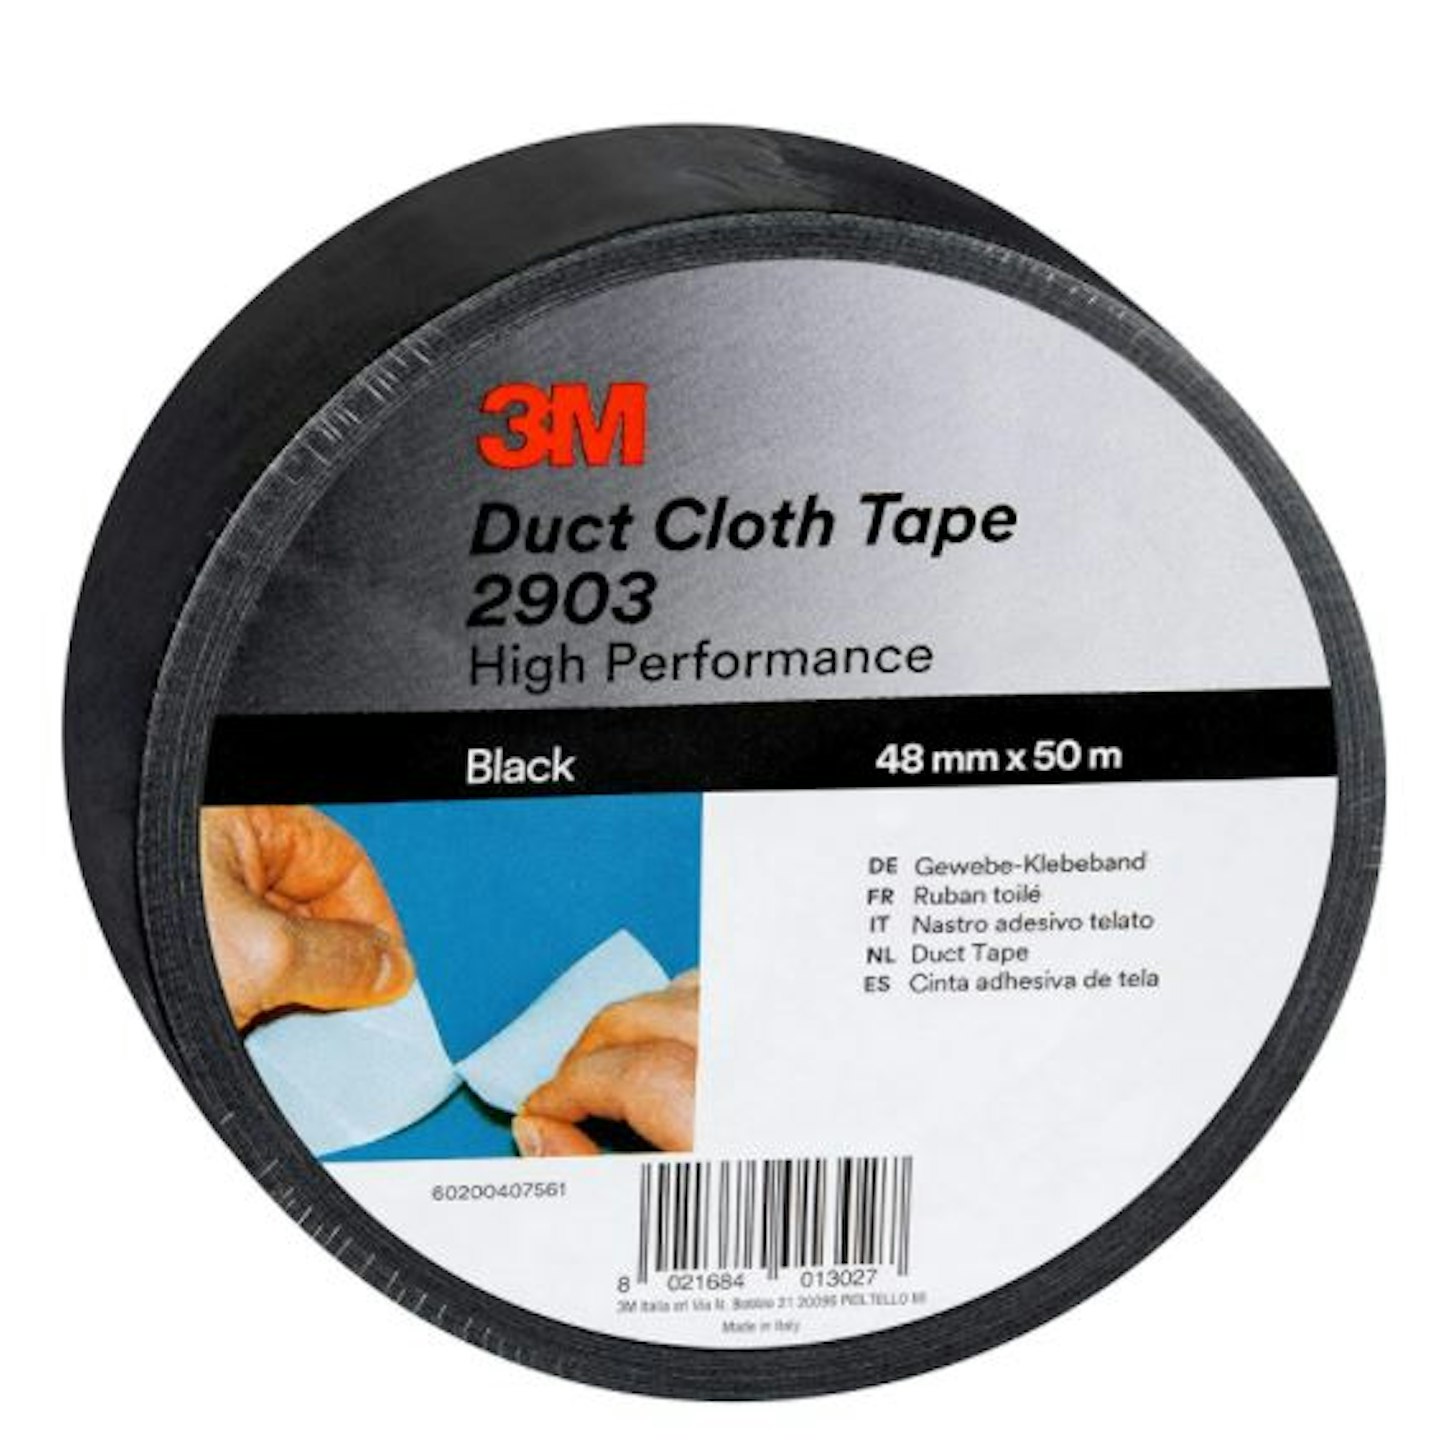 3M Scotch Duct Cloth Tape